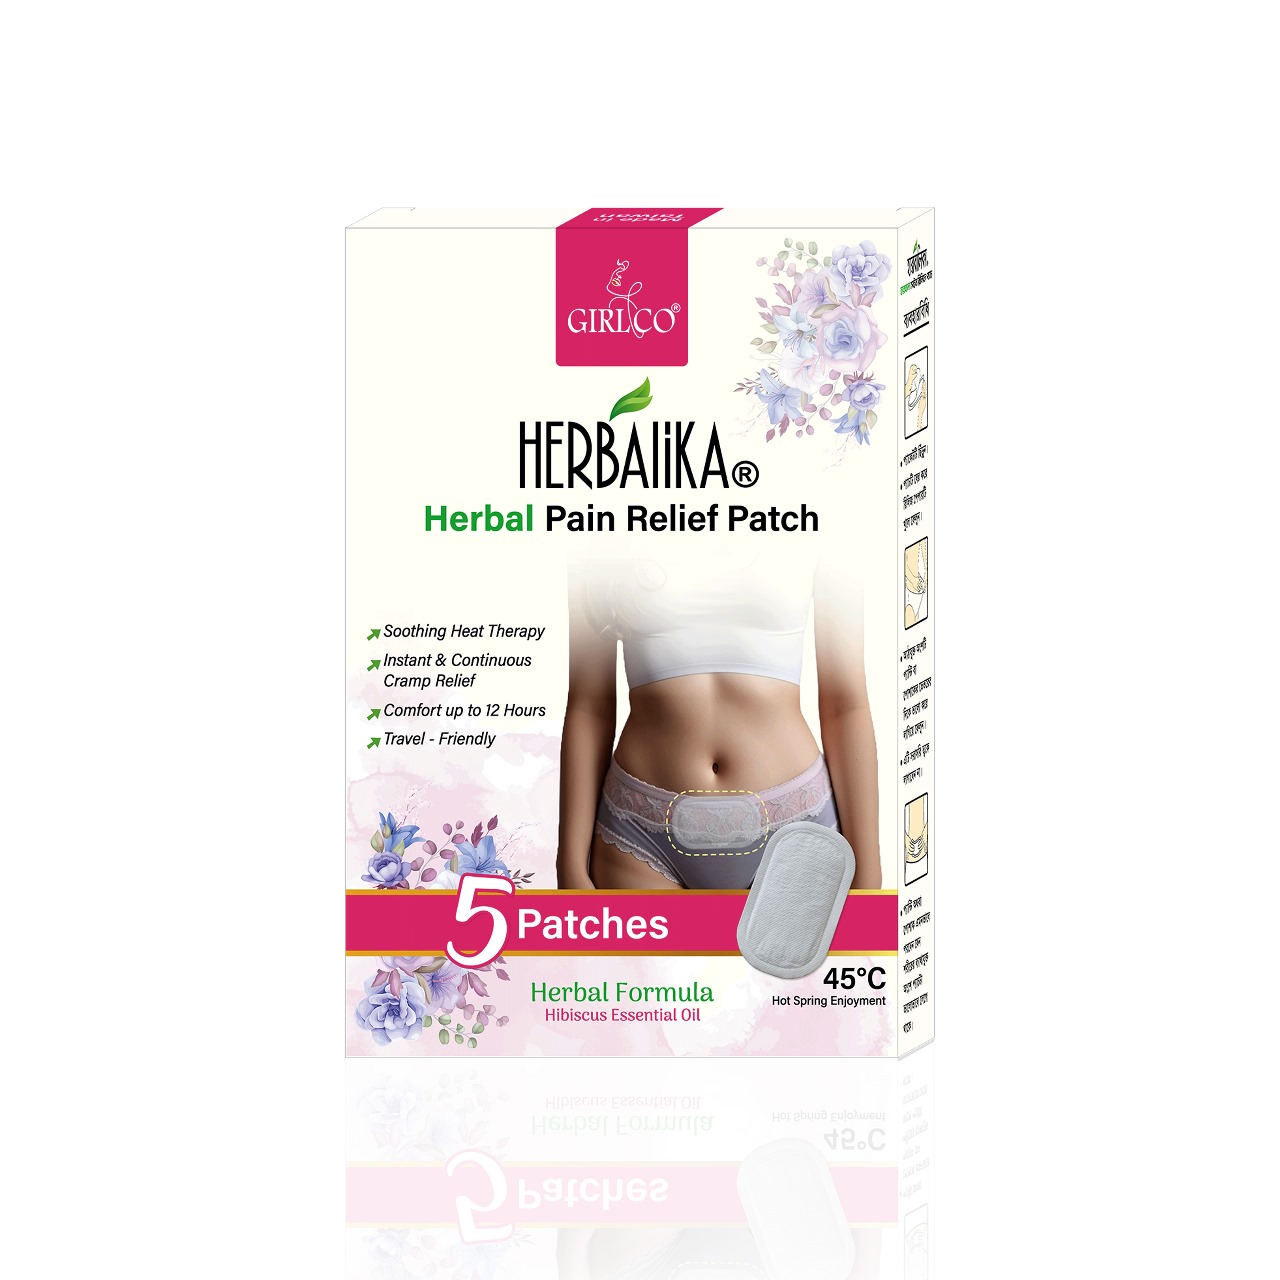 Herbalika herbal pain relief patch